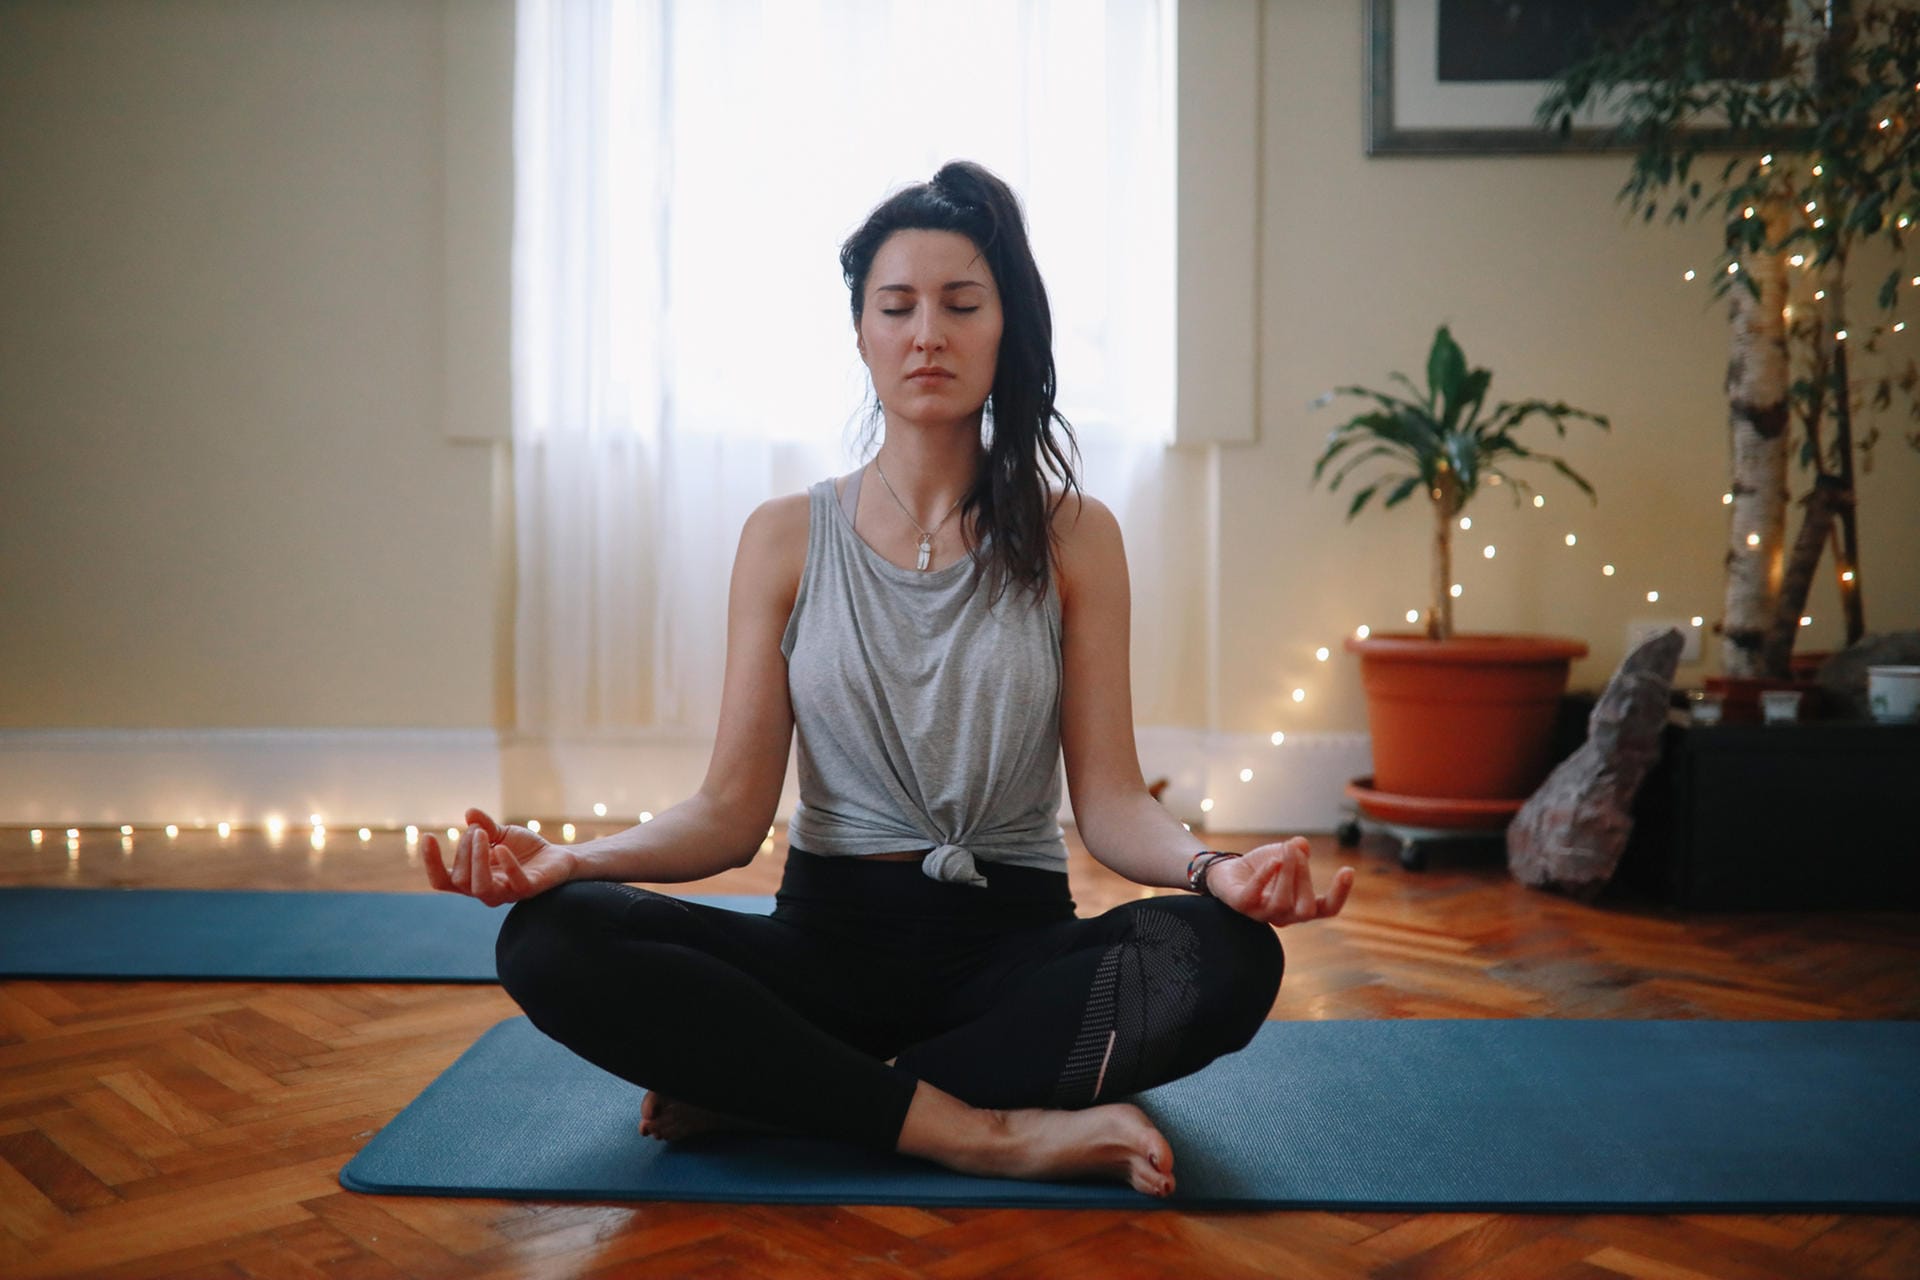 Der beste Weg, Stress zu vermeiden, ist eine Entspannungstechnik zu erlernen. Das kann Yoga sein, autogenes Training oder aber auch die progressive Muskelrelaxation (PMR) nach der Methode von Edmund Jacobsen.